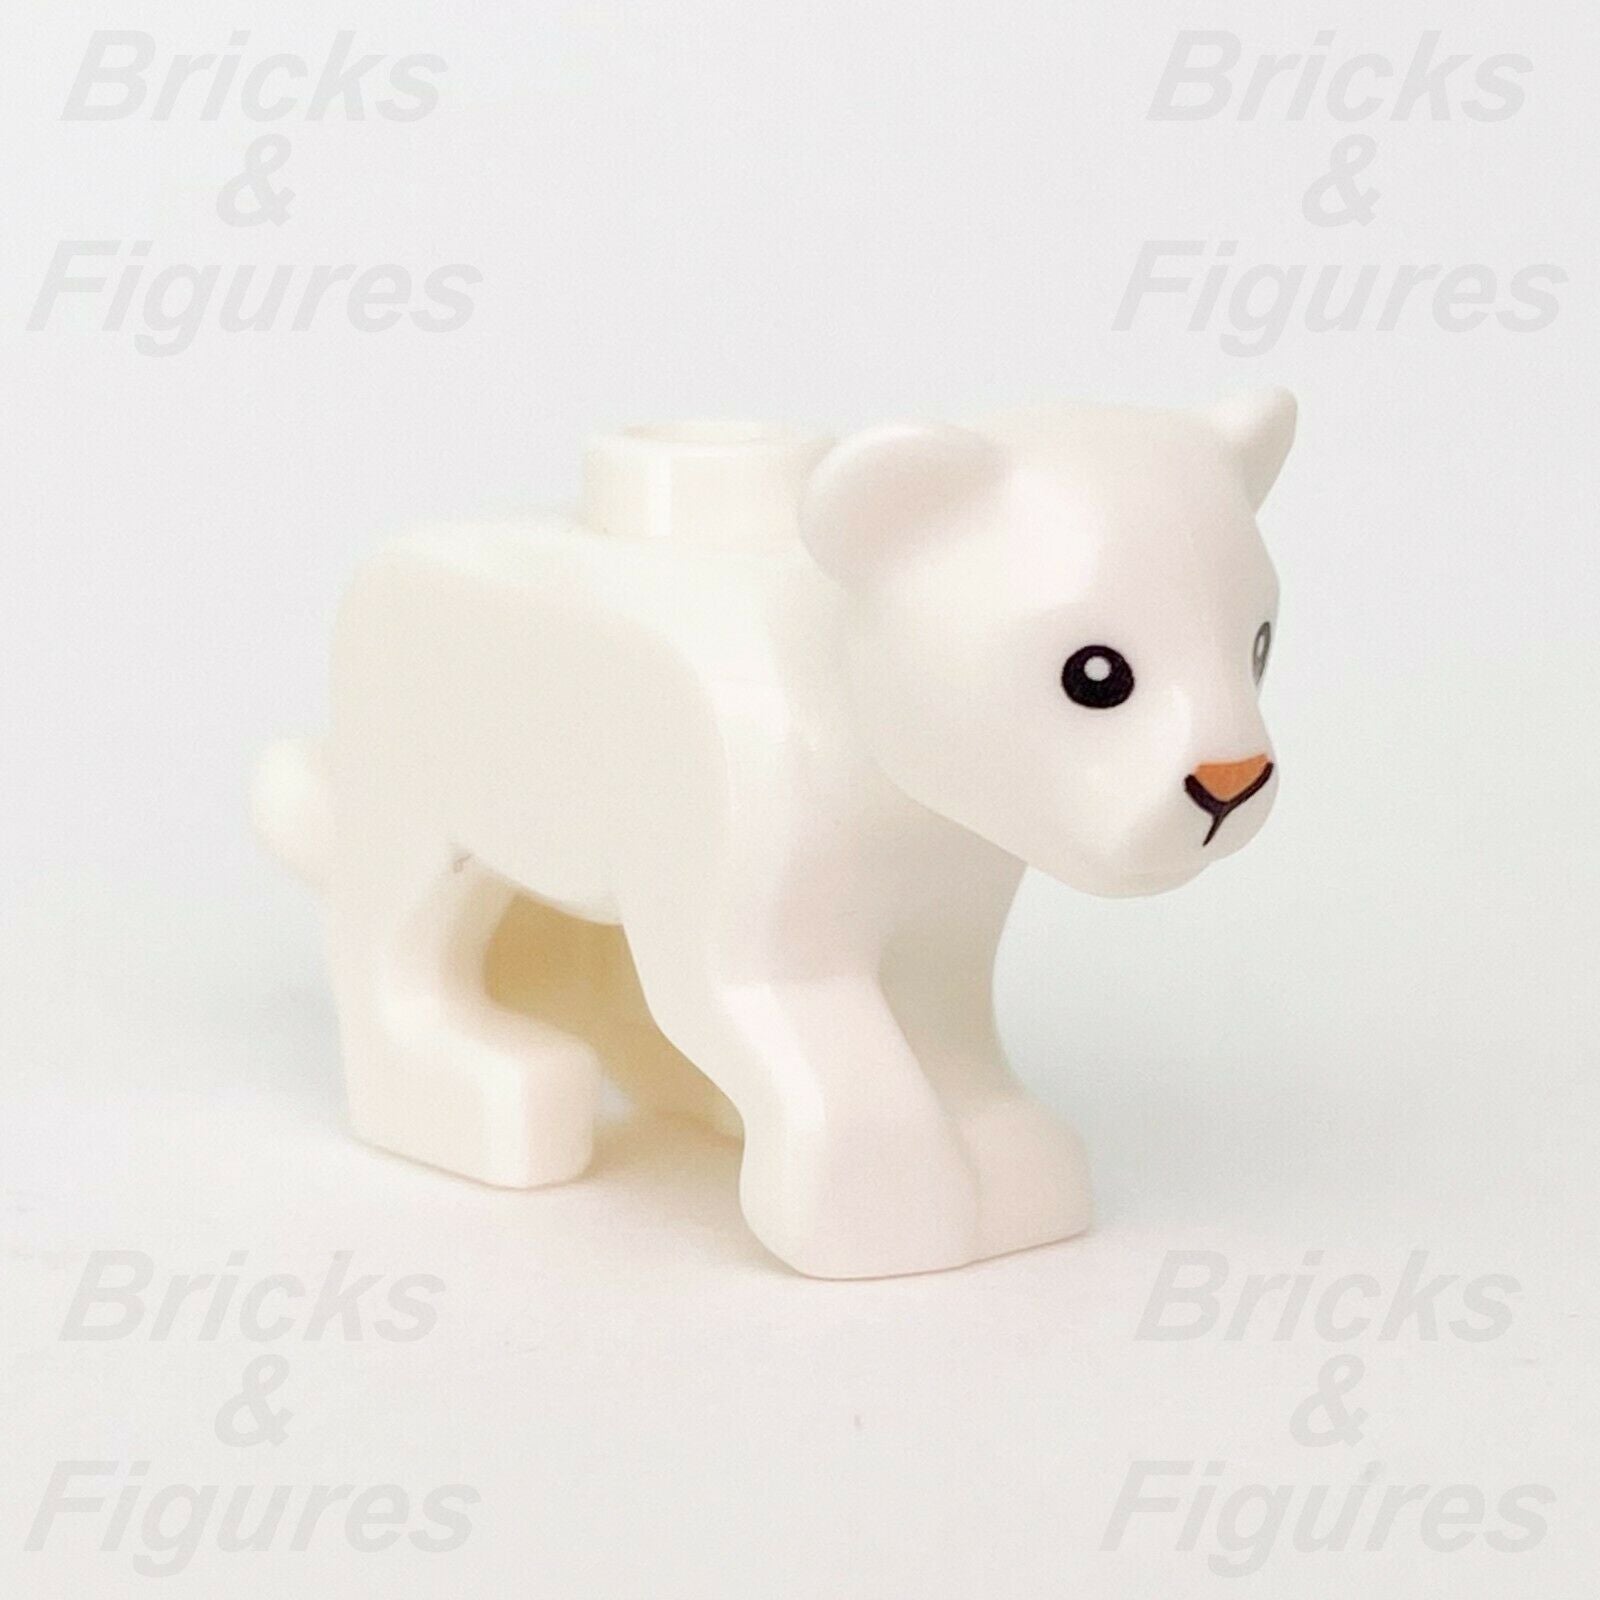 レゴ(LEGO) タウンシティ ホワイト 赤ちゃんライオン カブ 野生生物救助動物 ミニフィギュア パーツ 60307